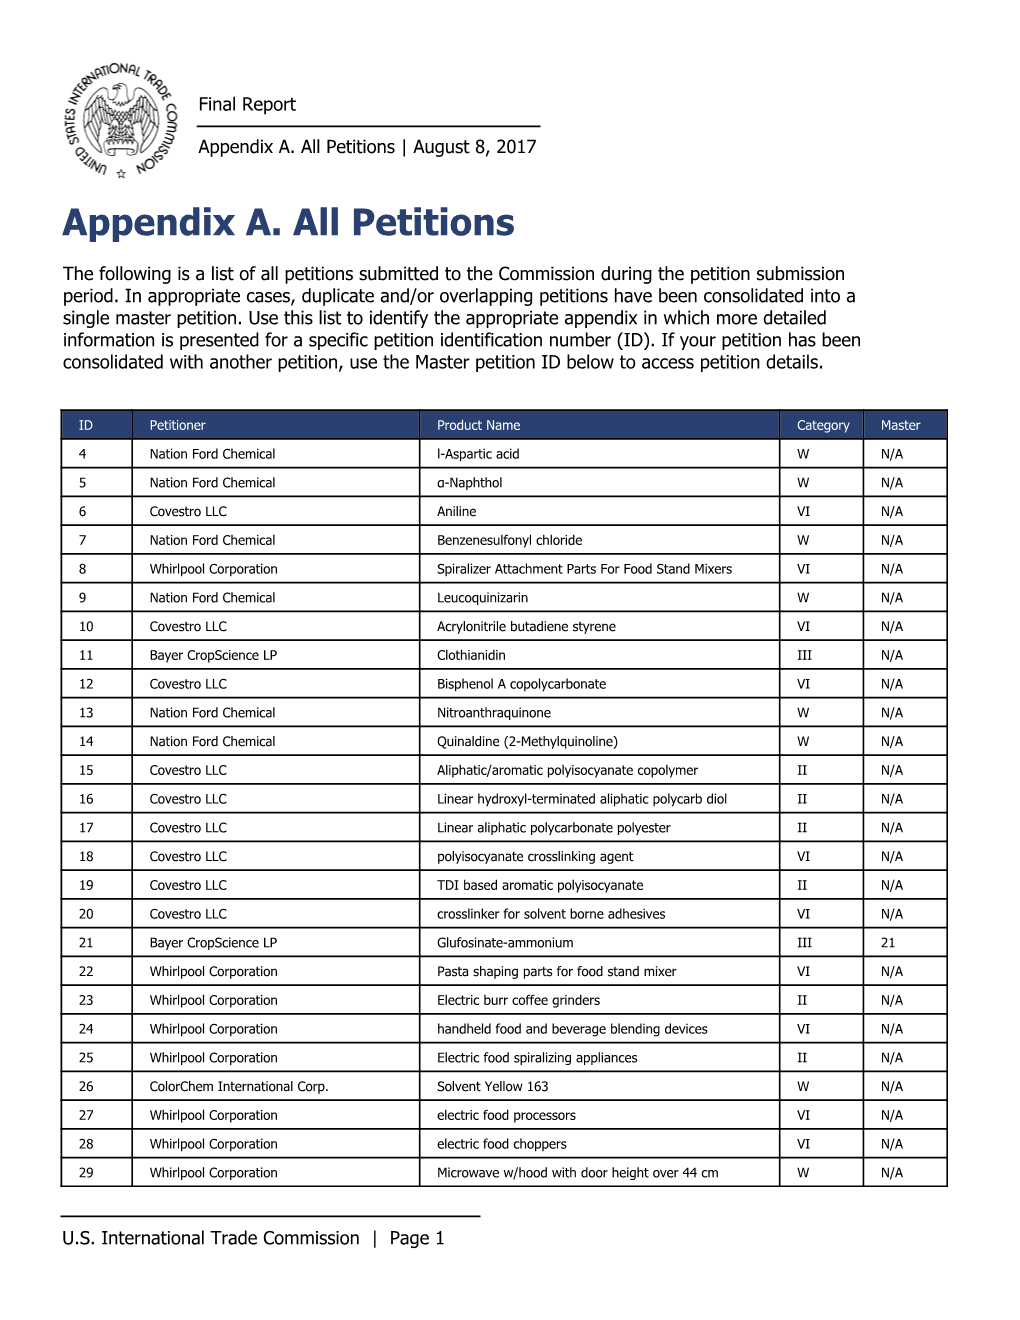 MTB Final Report Appendix A. All Petitions